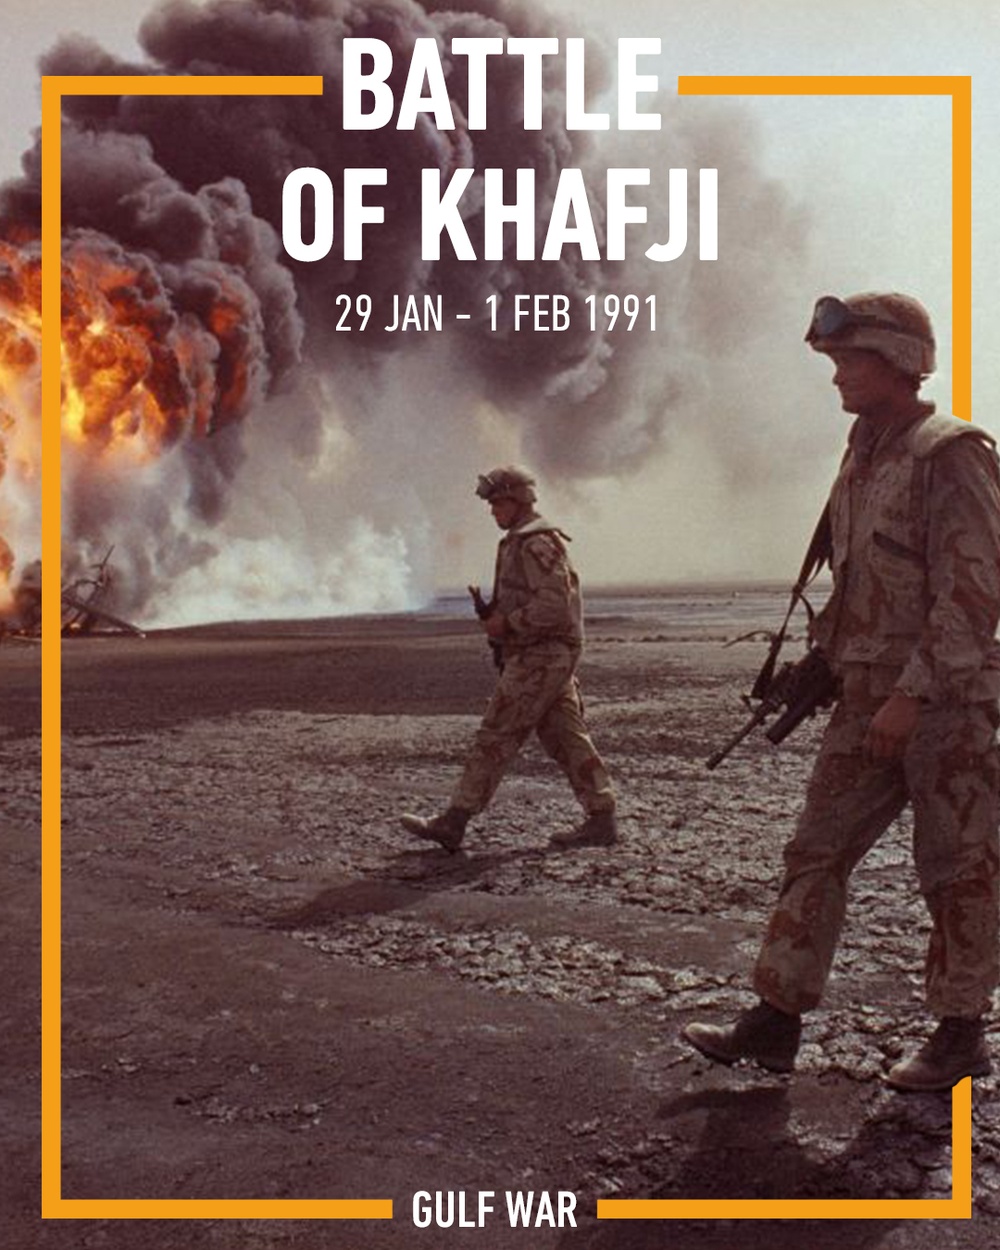 The Battle of Khafji